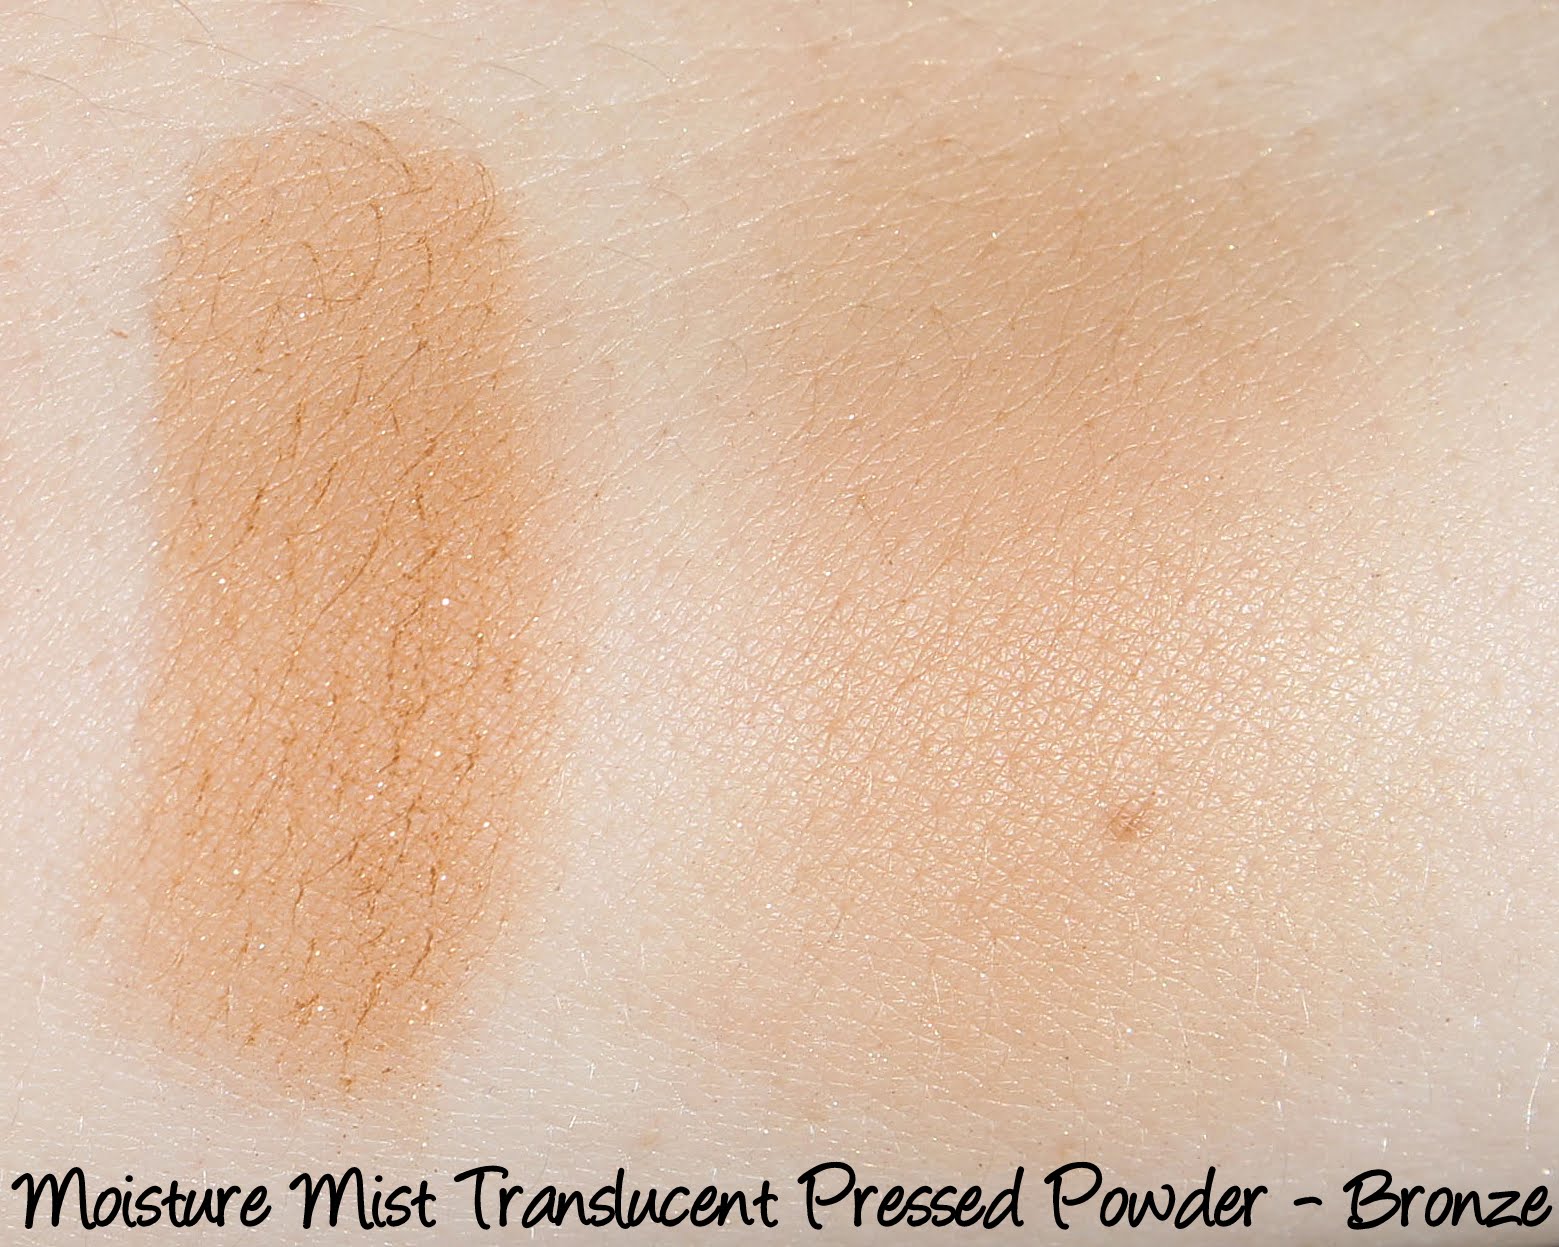 Moisture Mist Translucent Pressed Powder - Bronze Swatches & Review